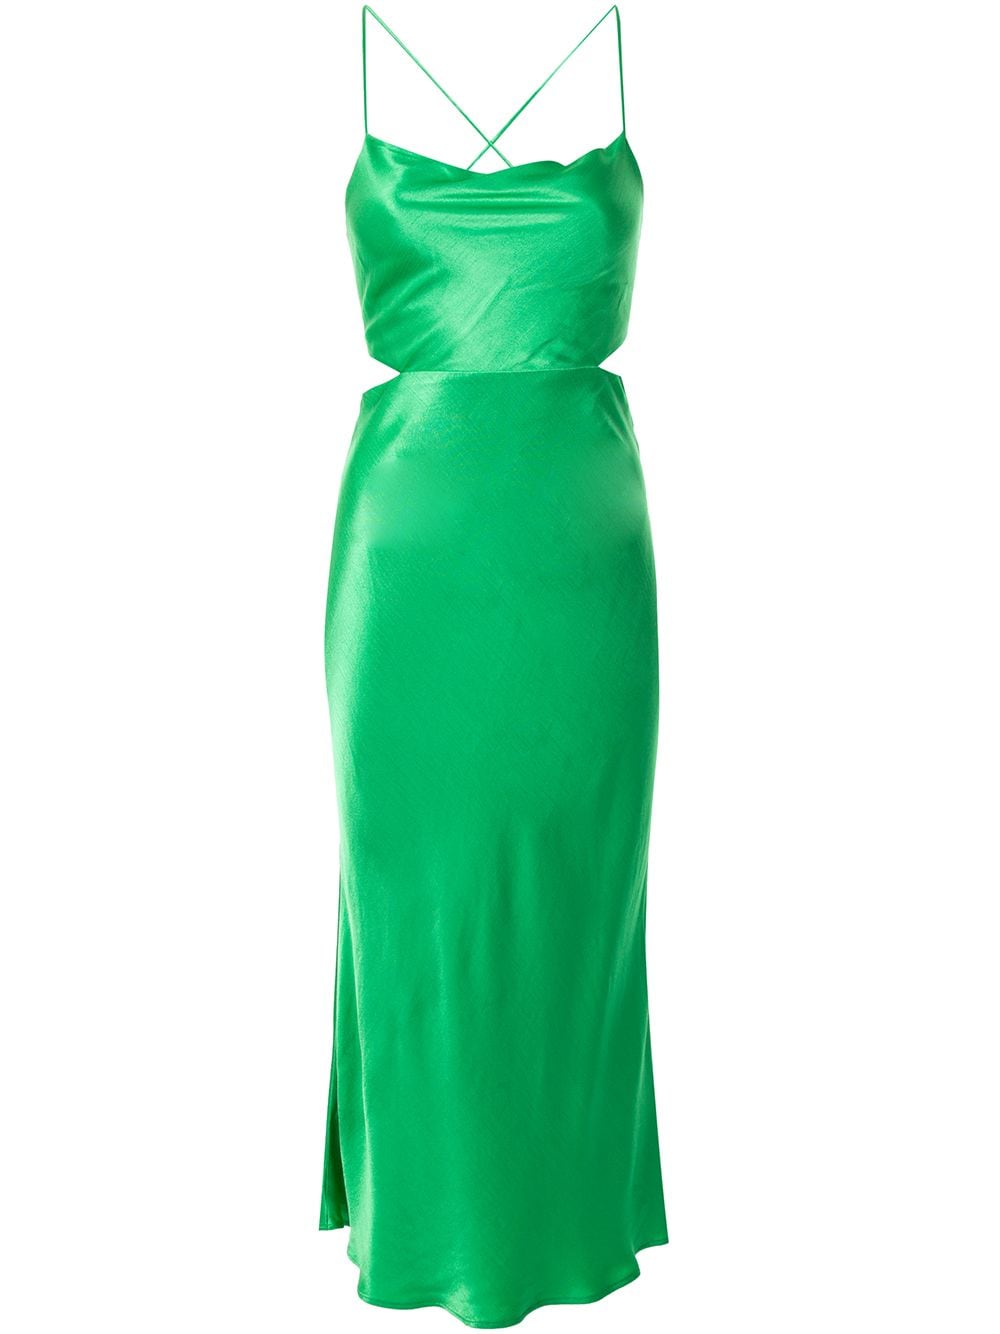 bec and bridge emerald green dress